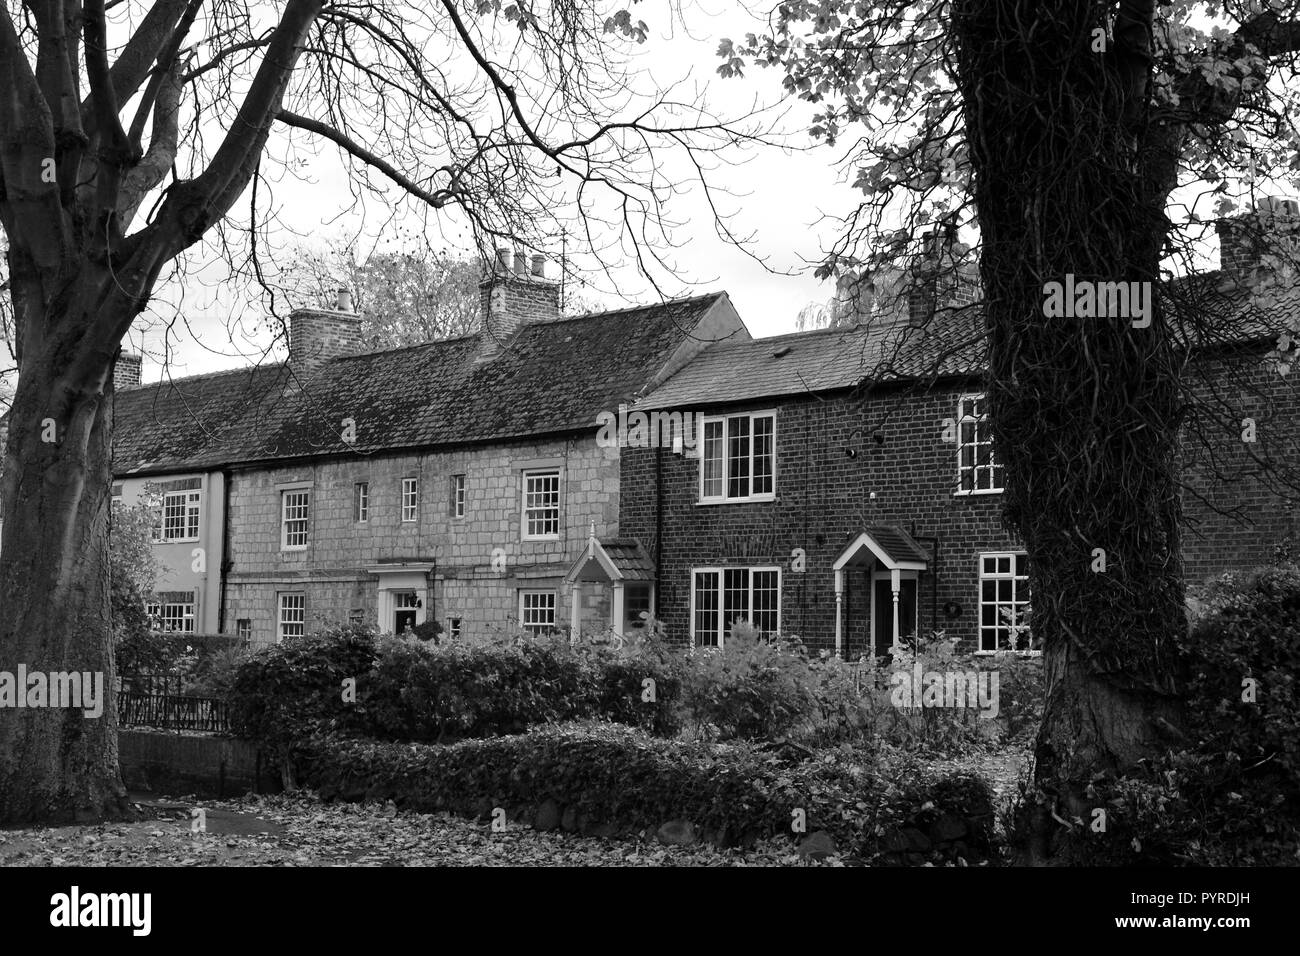 Schwarz-Weiß, herbstliches Bild des schönen, historischen Hartburn Village, Stockton-on-Tees, Großbritannien. Stockfoto